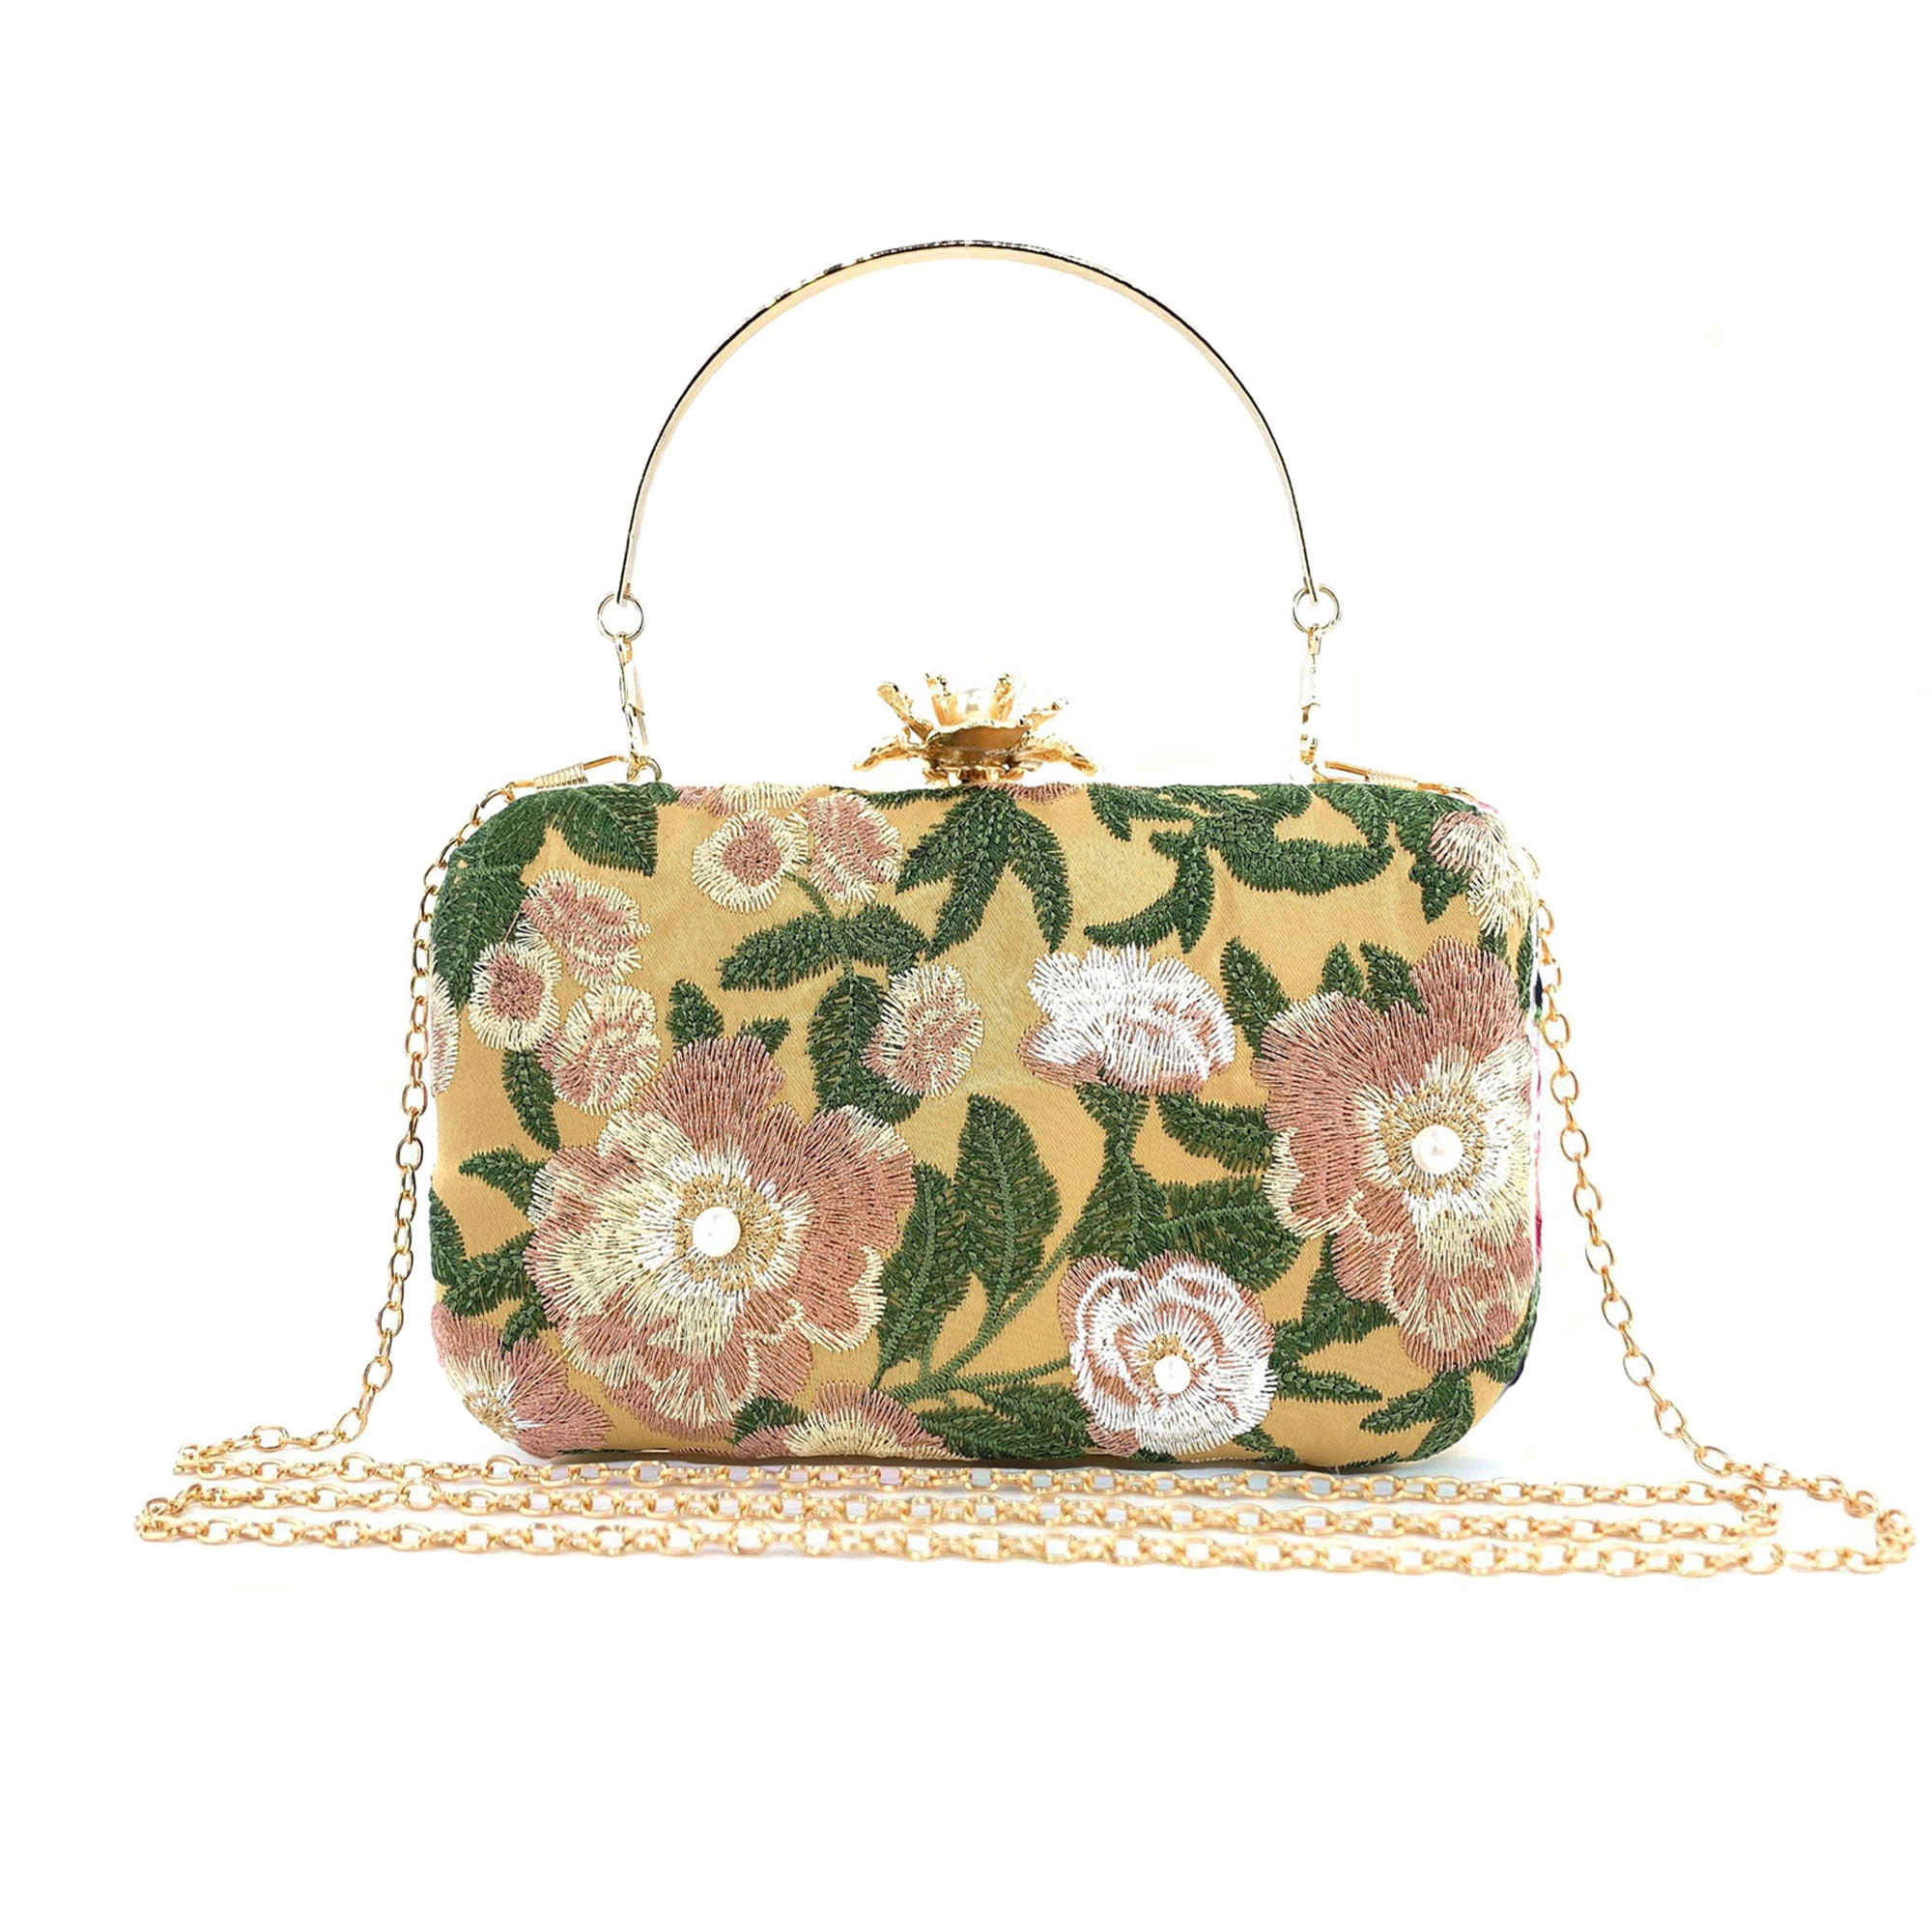 Light Gold Floral Crystal Bag | Pure Crystal Handwork | Premium Quality Bag | Party Bridal Wedding Bag | Elegant Evening Bag / Clutch Bag